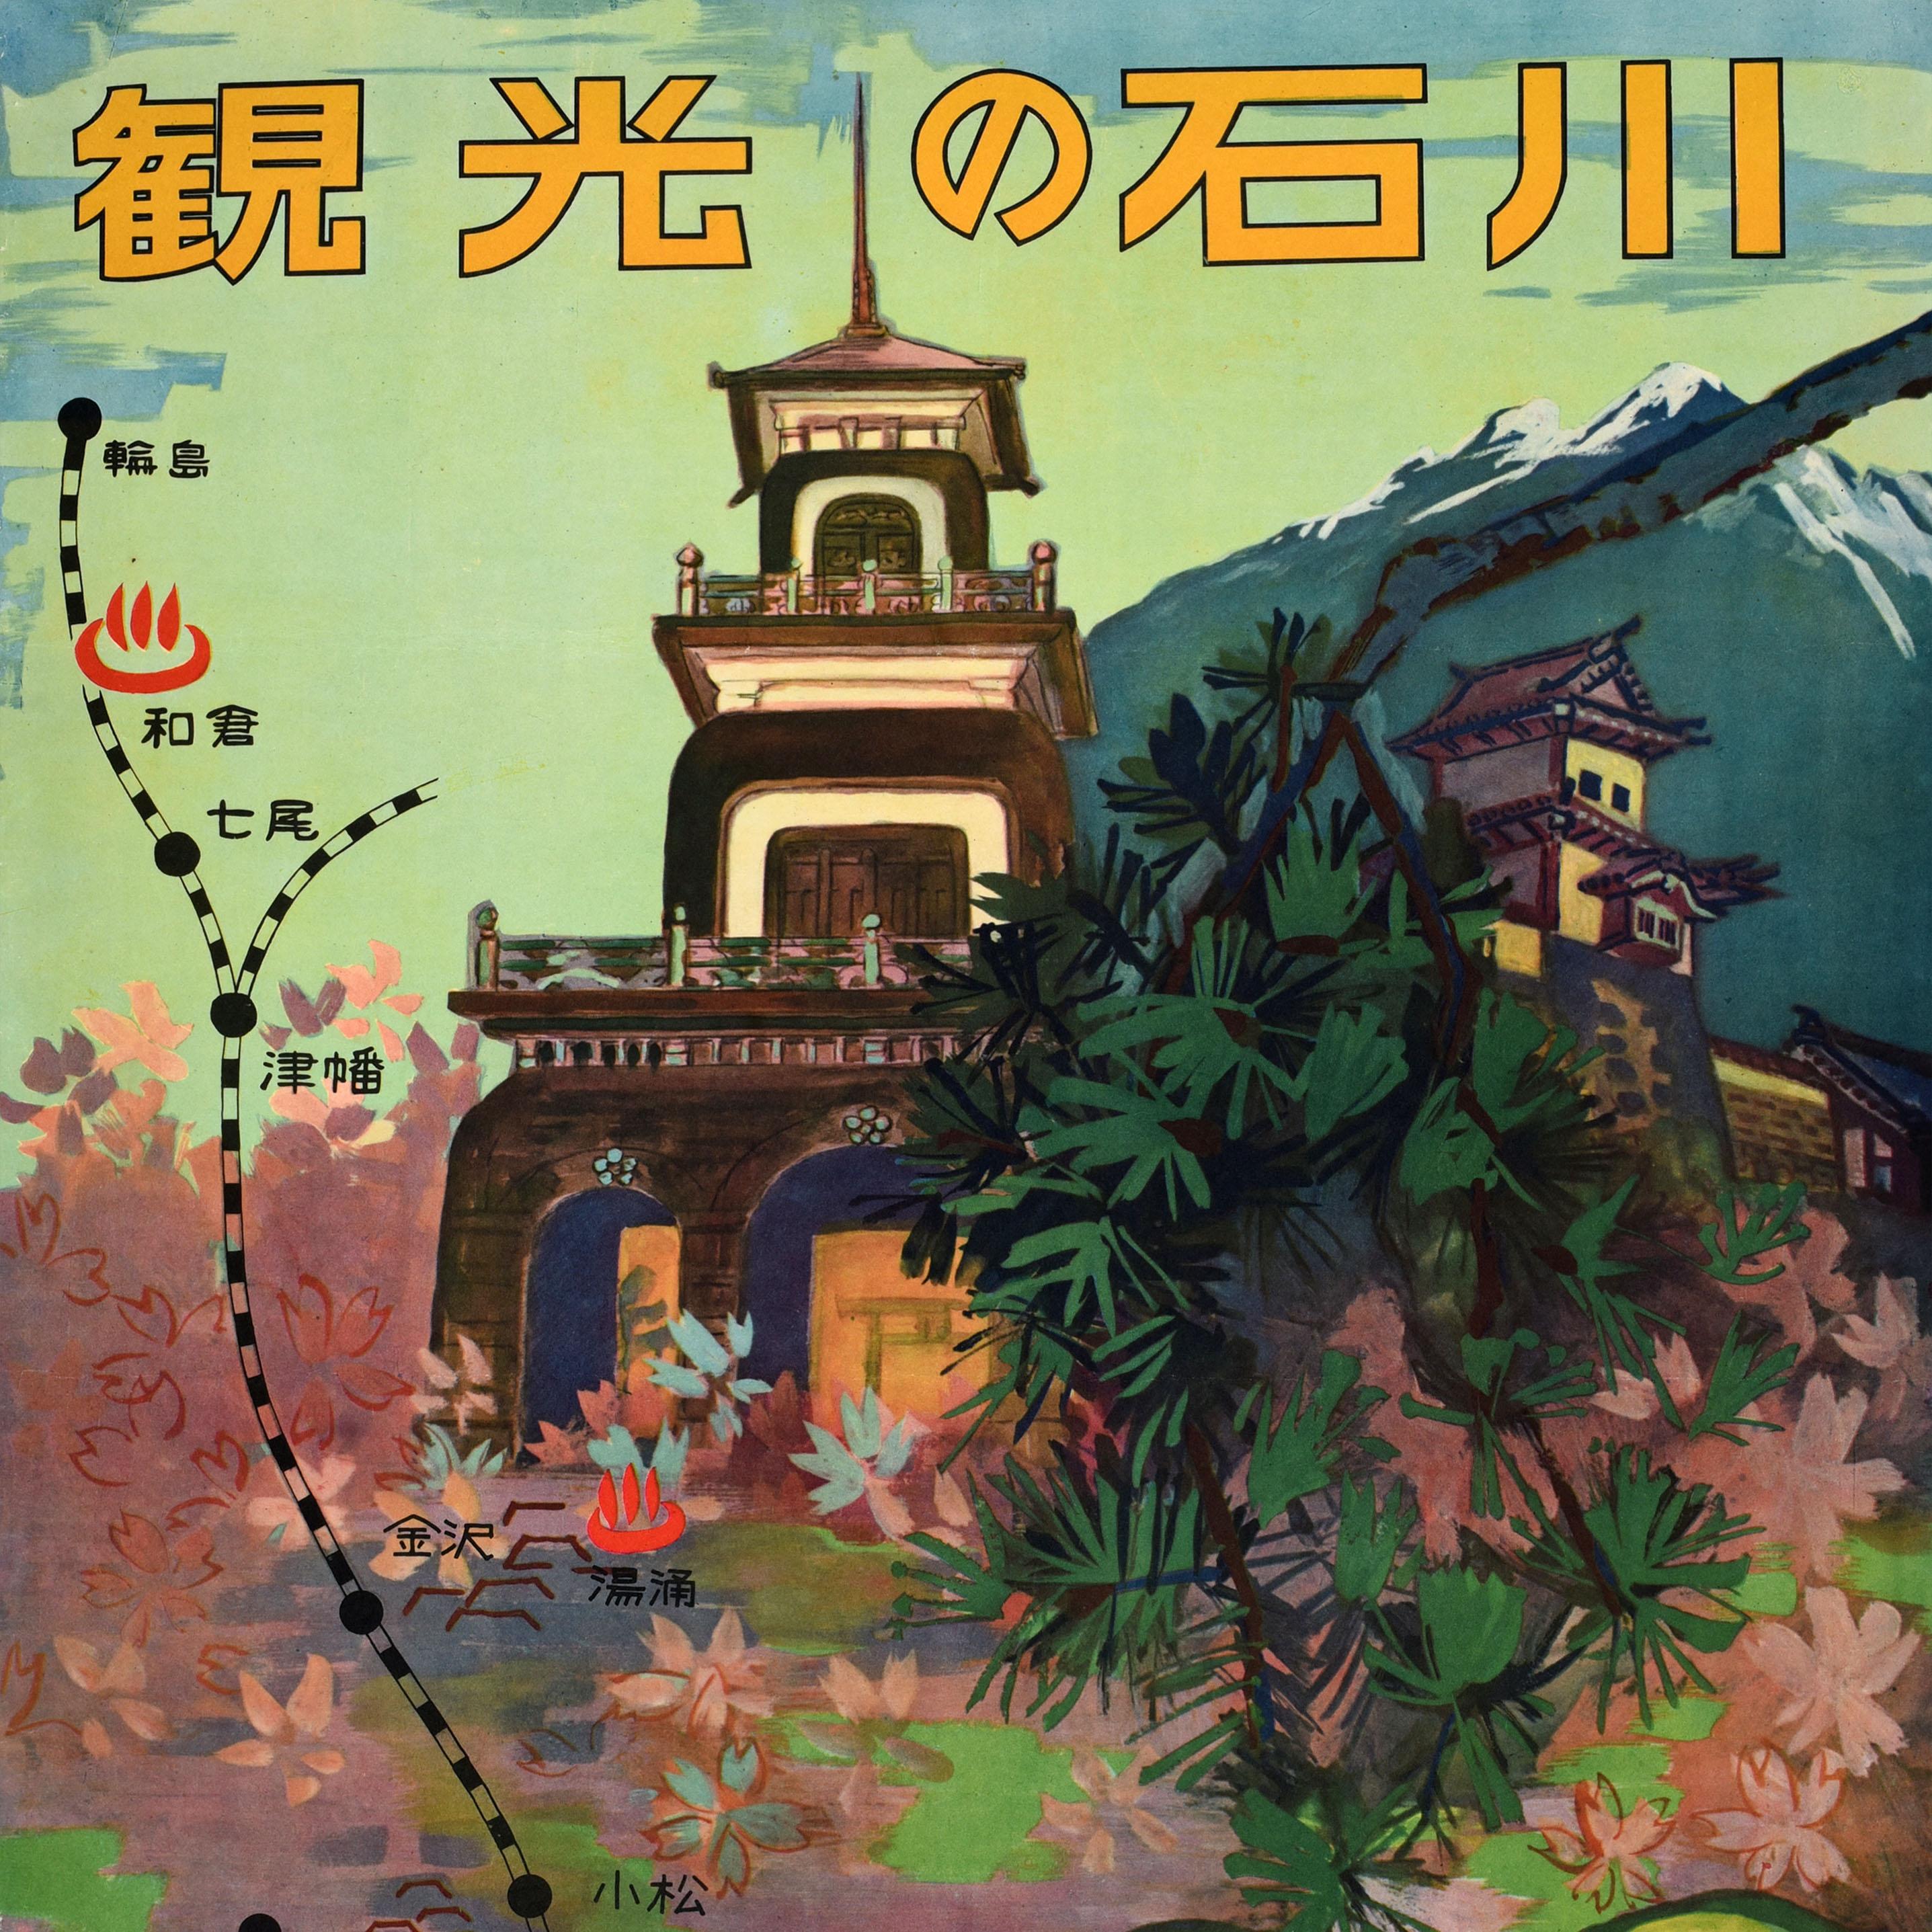 Affiche originale de voyage en train pour 石川 Ishikawa sur l'île japonaise de Honshu, émise par la Fédération du tourisme de la préfecture d'Ishikawa et le Bureau des chemins de fer de Nagoya, représentant le château historique de Kanazawa et le